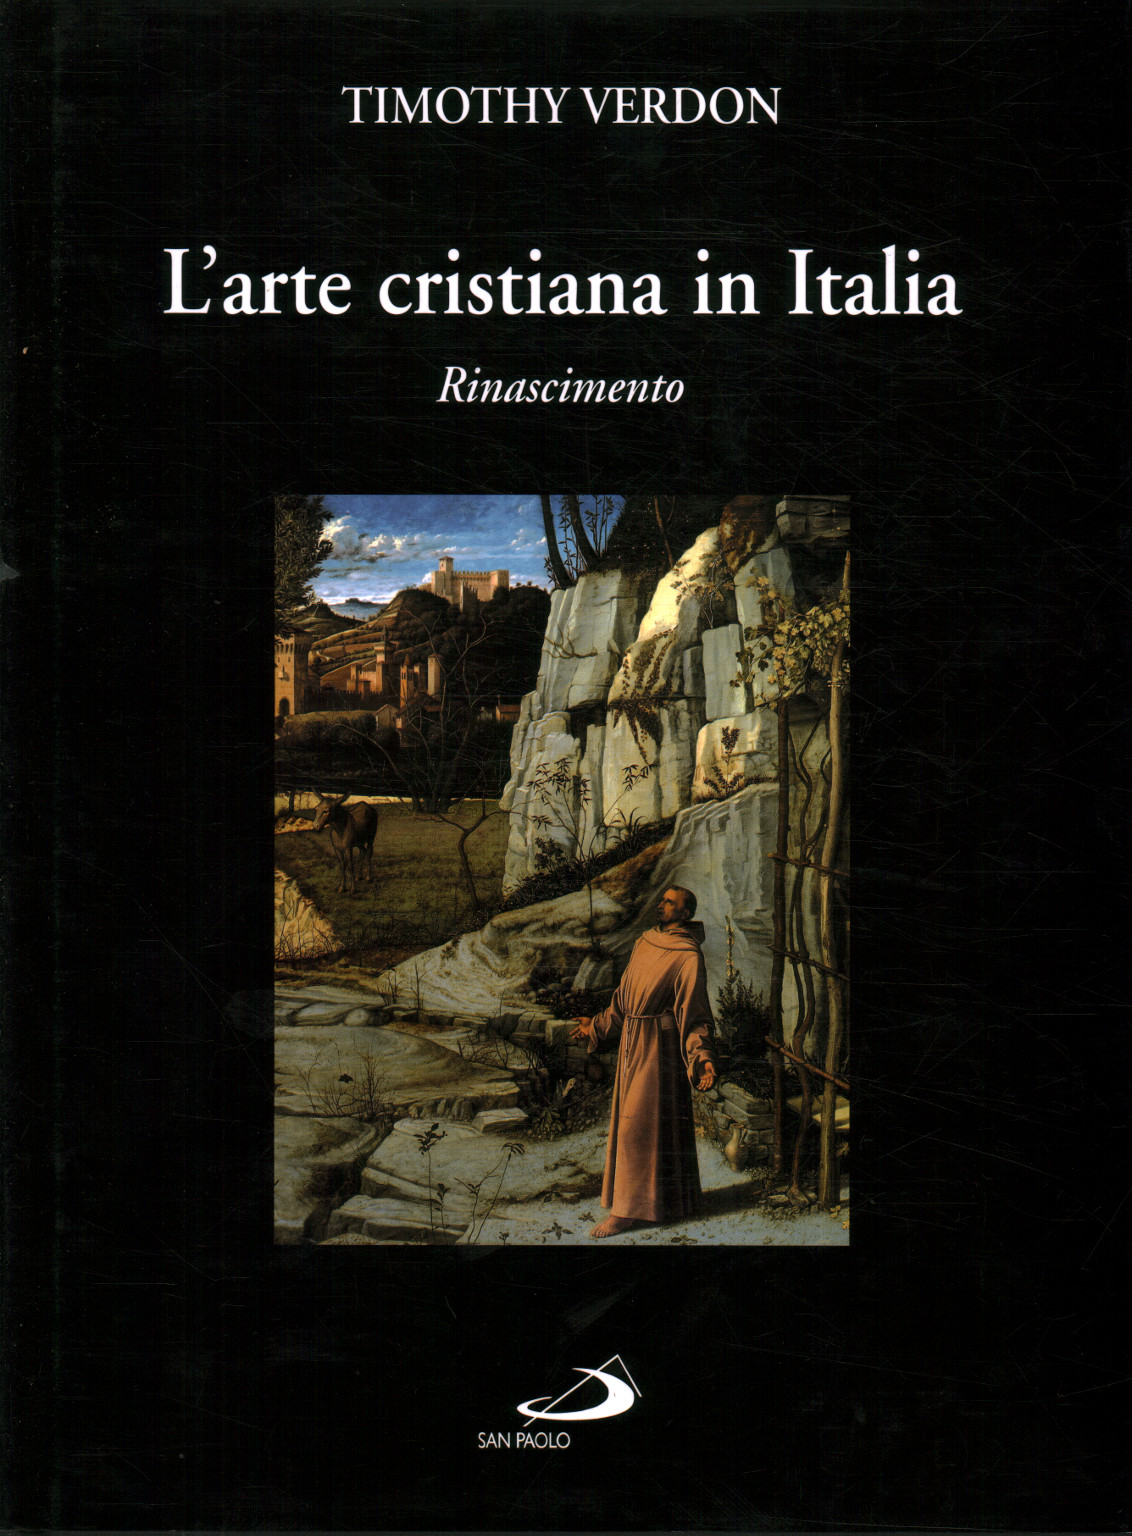 L'art chrétien en Italie (tome 2), Timothée Verdon